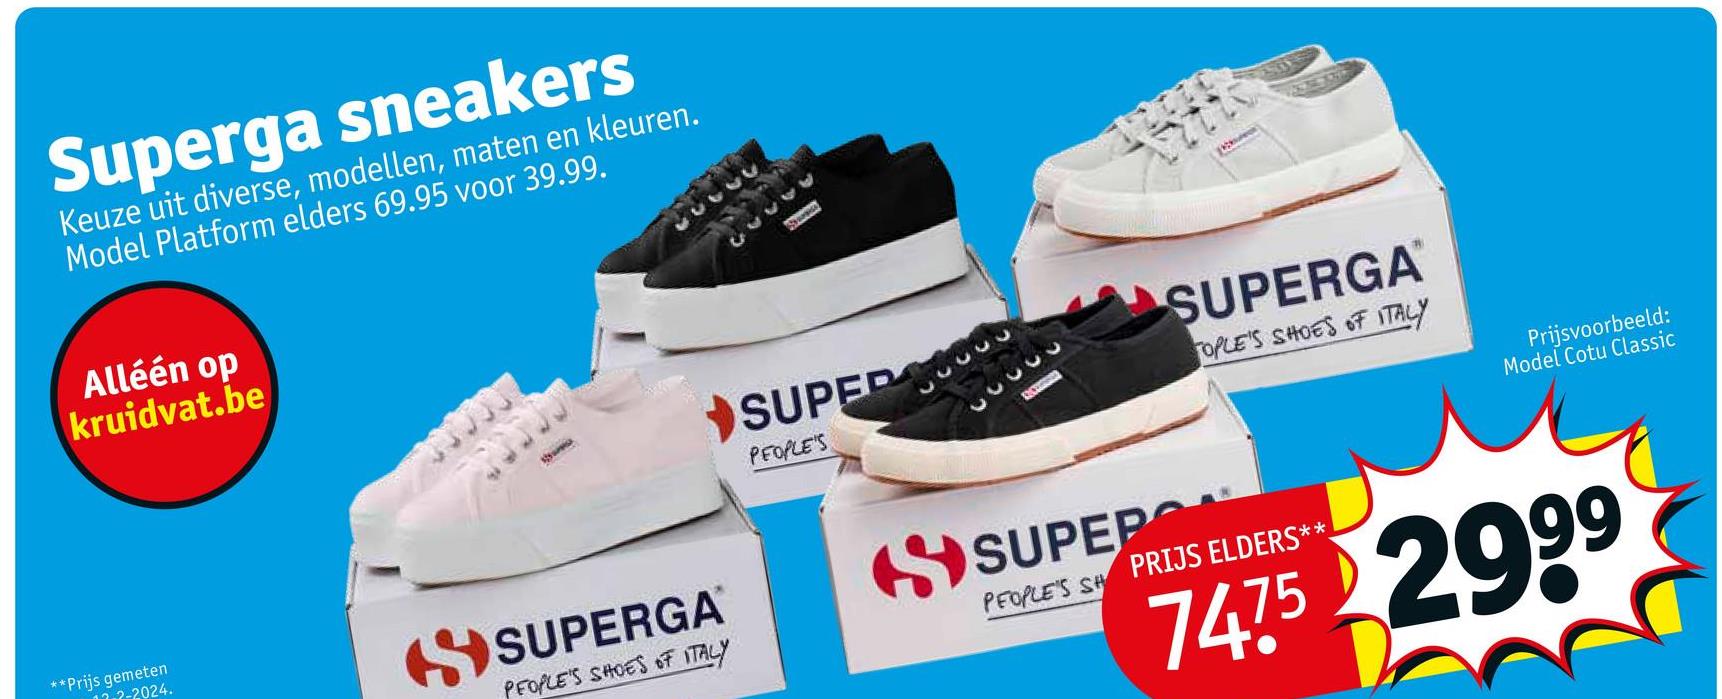 Superga sneakers
Keuze uit diverse, modellen, maten en kleuren.
Model Platform elders 69.95 voor 39.99.
Alléén op
kruidvat.be
SUPER
PEOPLE'S
33333
33333
SUPERGA™
OPLE'S SHOES OF ITALY
Prijsvoorbeeld:
Model Cotu Classic
**Prijs gemeten
2-2024.
SUPERGA
PEOPLE'S SHOES OF ITALY
SUPEPO
PEOPLE'S SH PRIJS ELDERS**
7475 2999